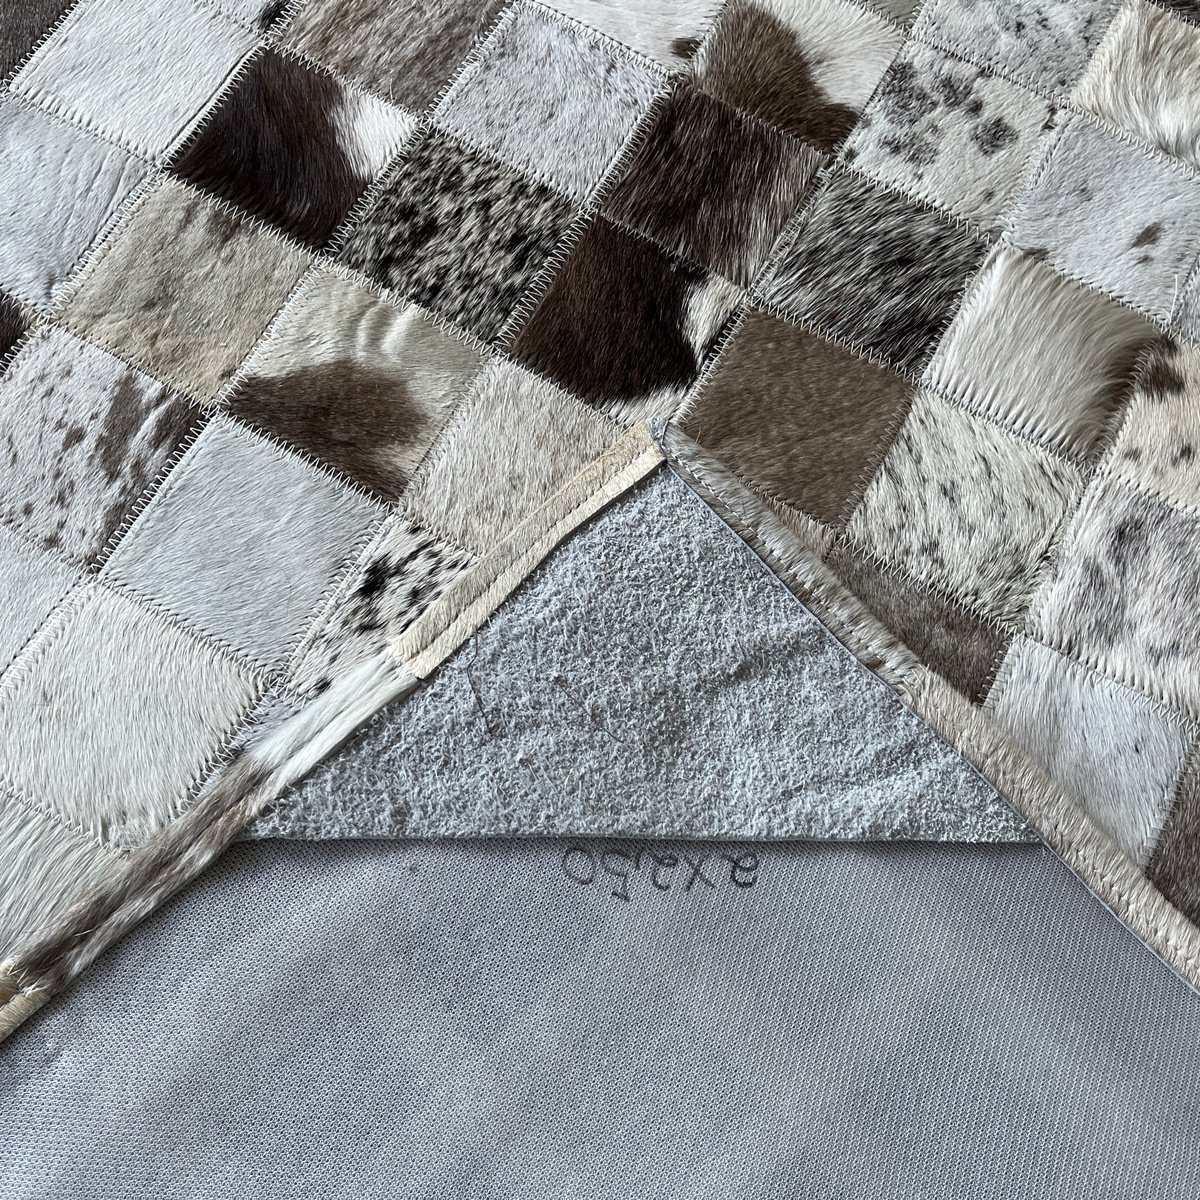 Tapete de couro cinza natural malhado 2,00x2,50 com bordas - 3